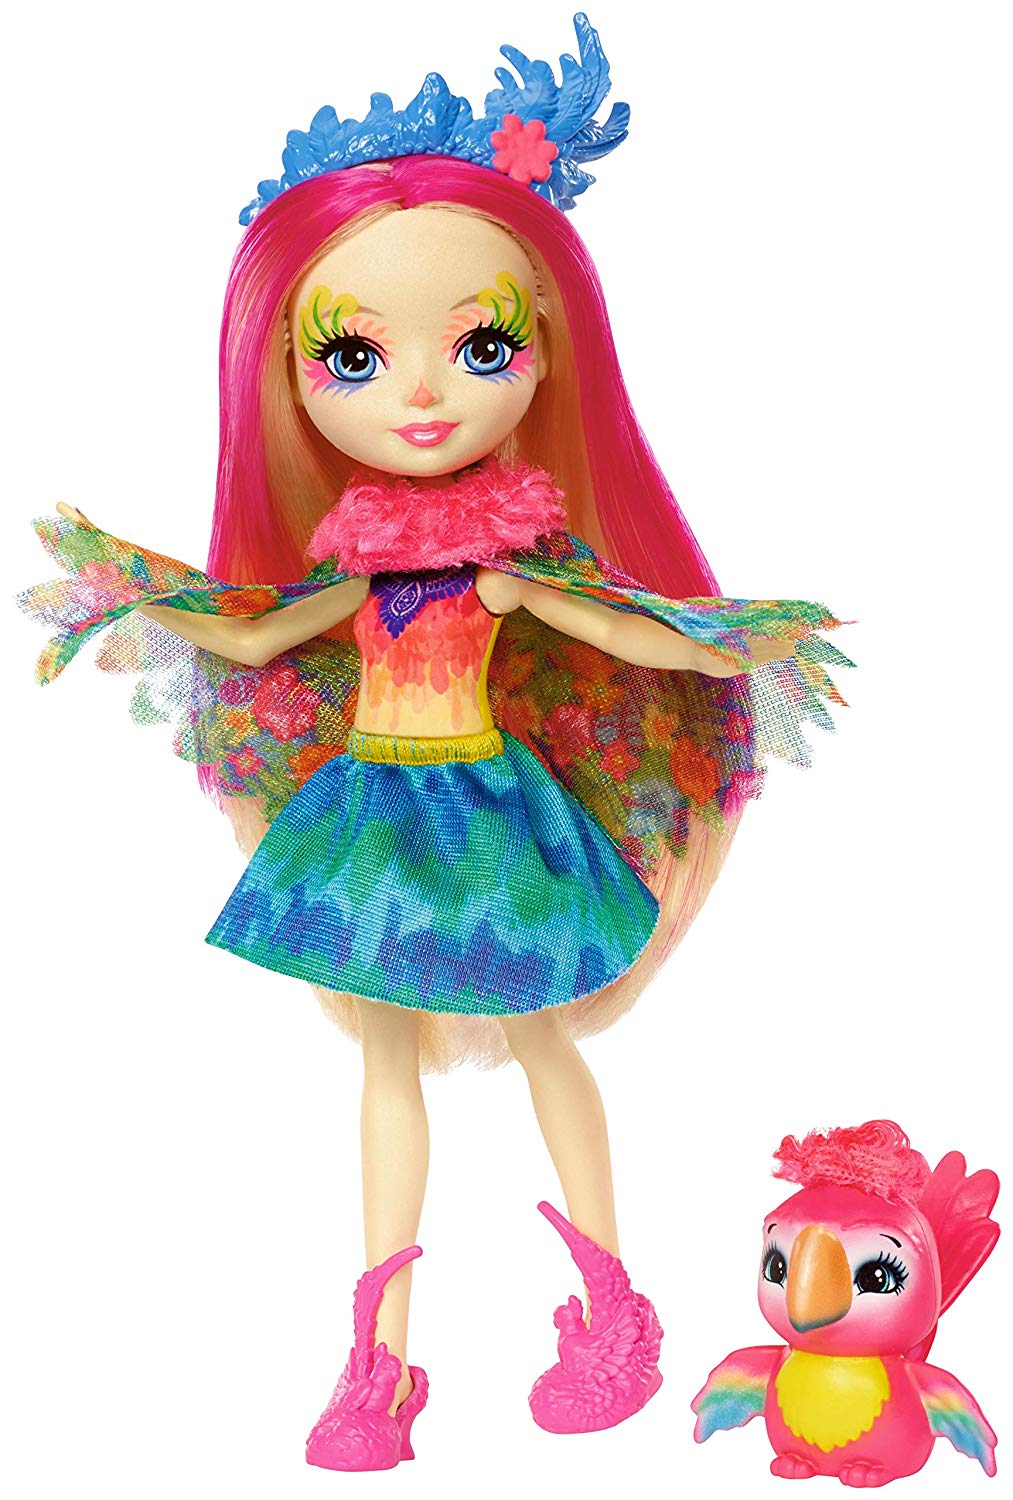 Enchantimals Mini-poupée Peeki Perroquet et Figurine Animale Sheeny, aux cheveux roses fuchsia avec jupe à motifs en tissu, jouet enfant, FJJ21